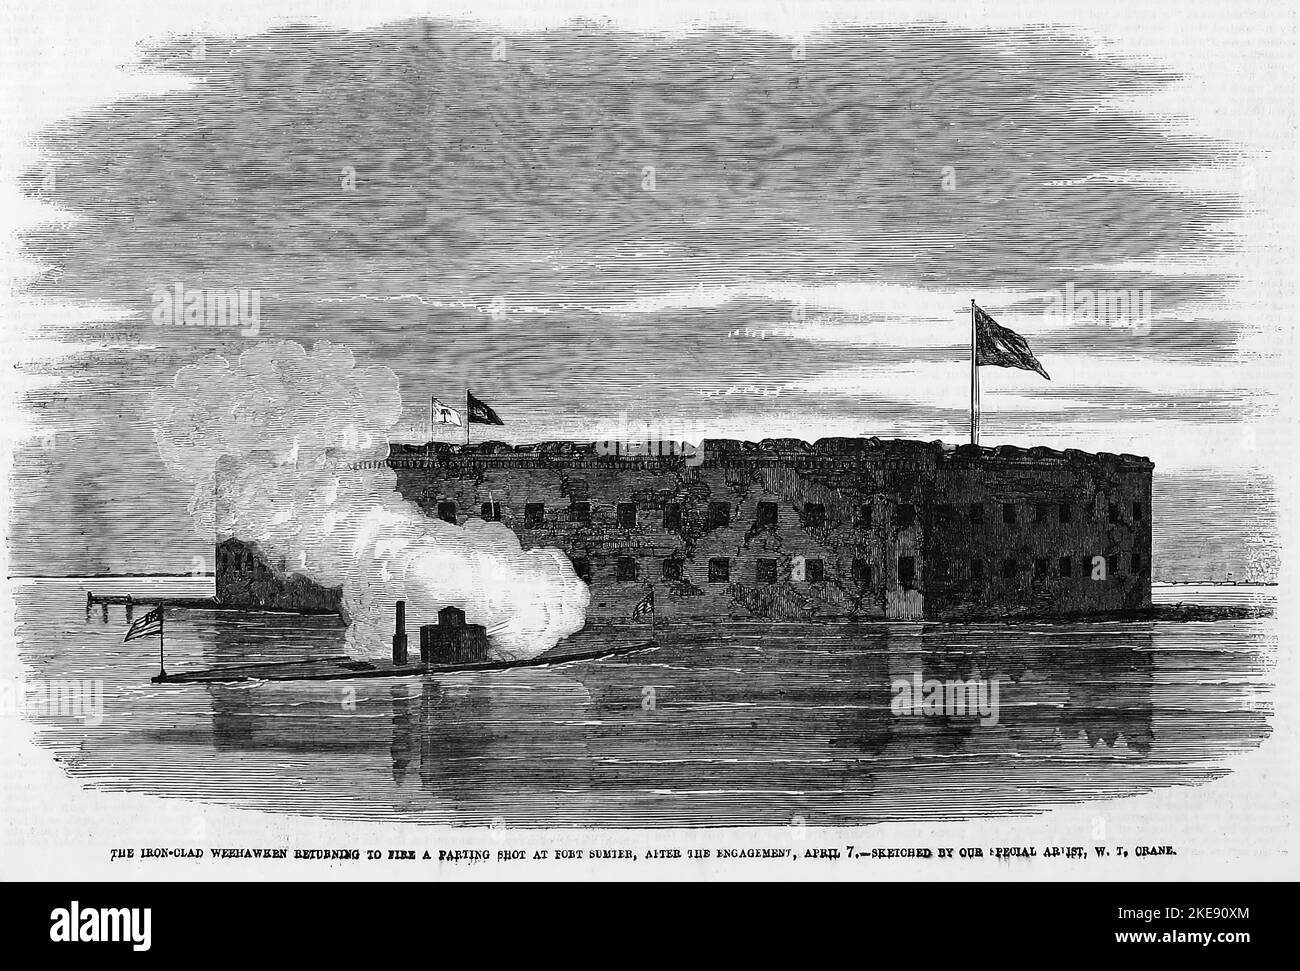 Il ferro Weehawken tornando a sparare un colpo di separazione a Fort Sumter, dopo l'ingaggio, 7th aprile 1863. Illustrazione della guerra civile americana del 19th° secolo dal quotidiano illustrato di Frank Leslie Foto Stock